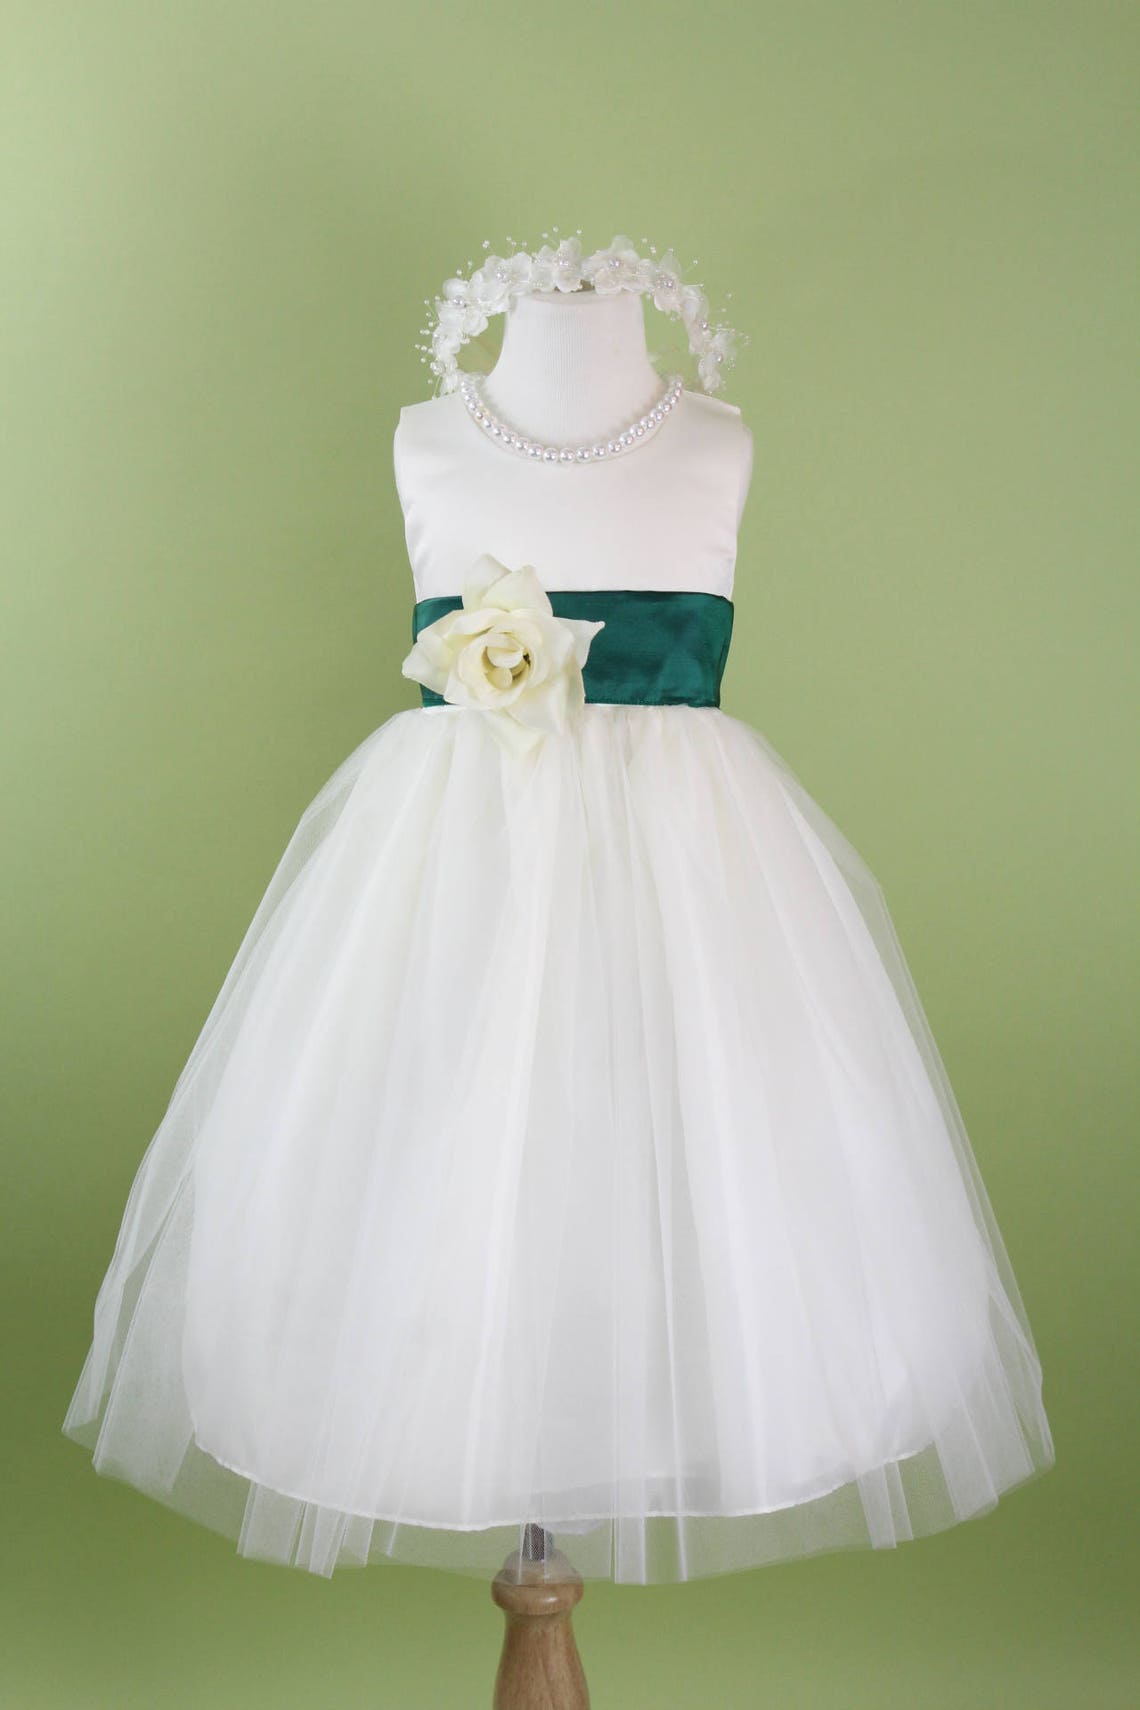 Flower Girl Dress with Classic Tulle Skirt Hunter Green Sash | Etsy